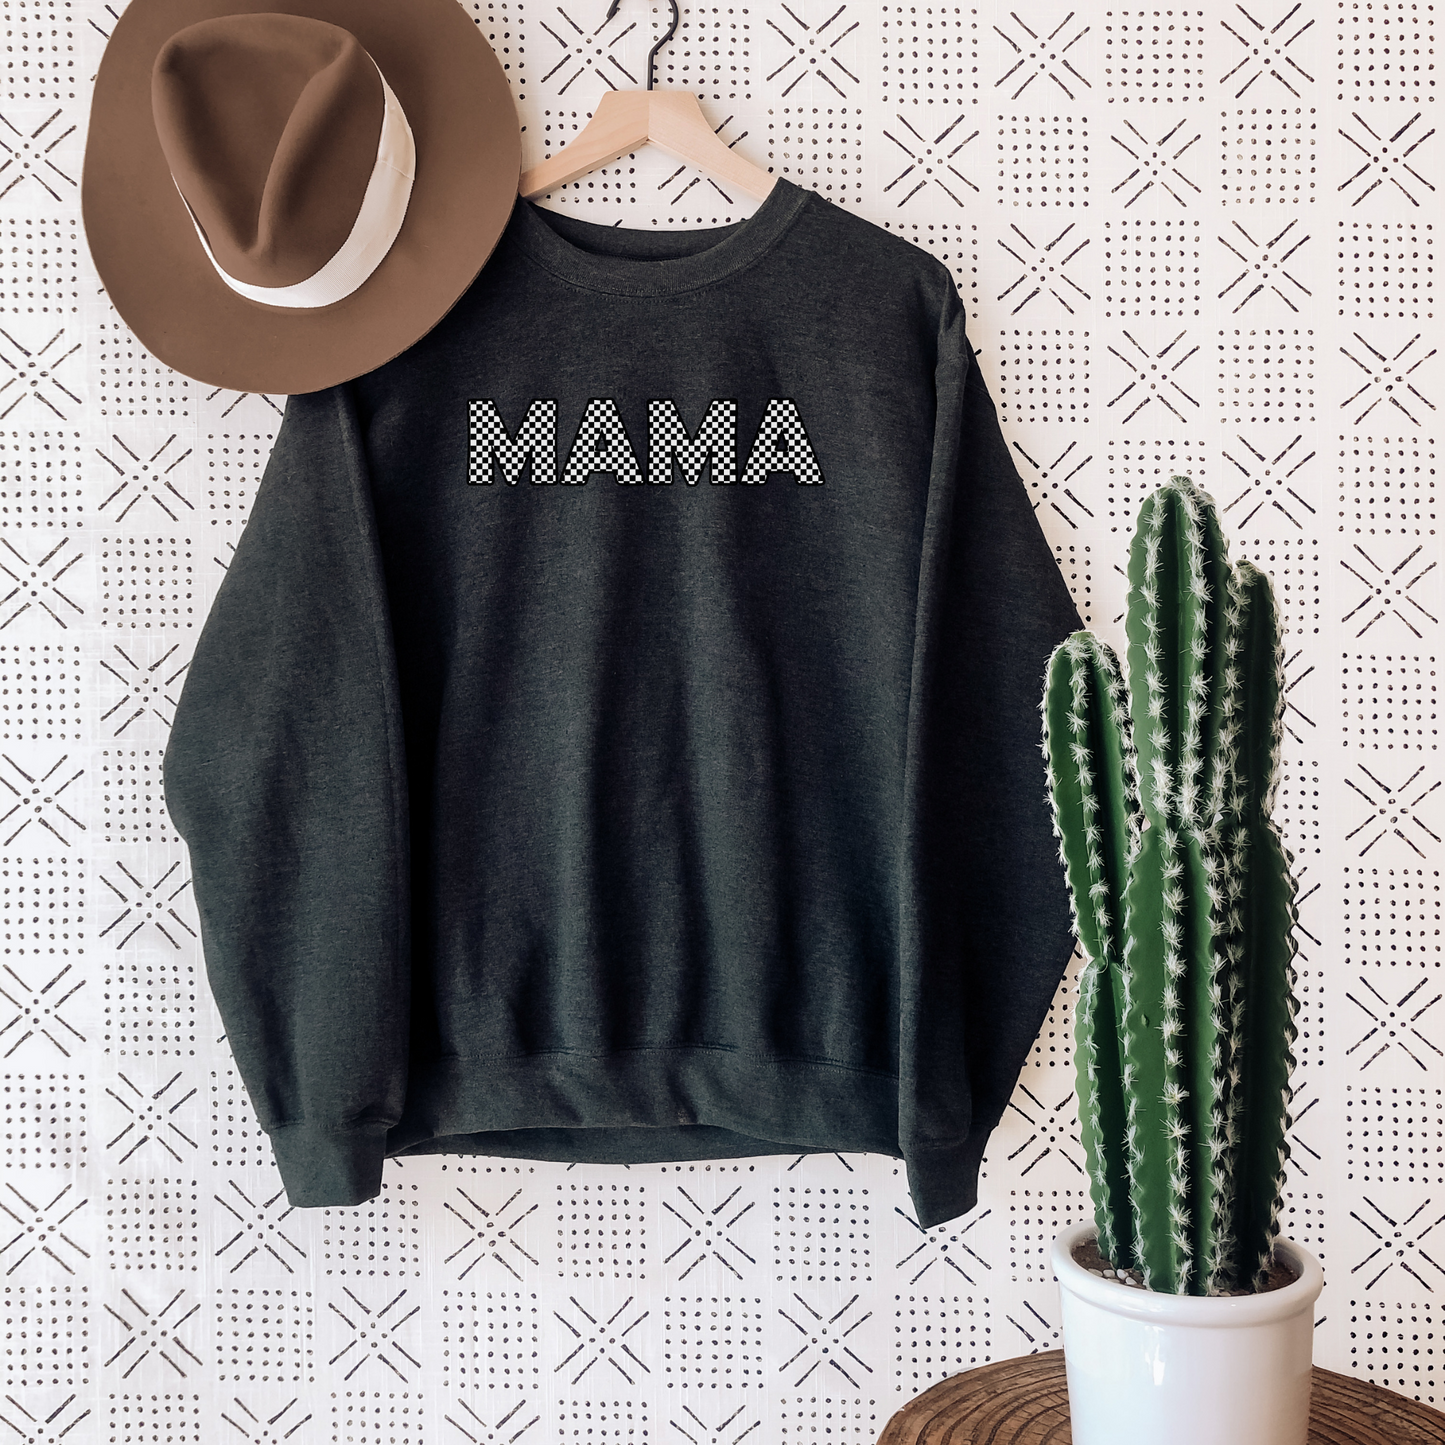 Checkered Mama Sweatshirt